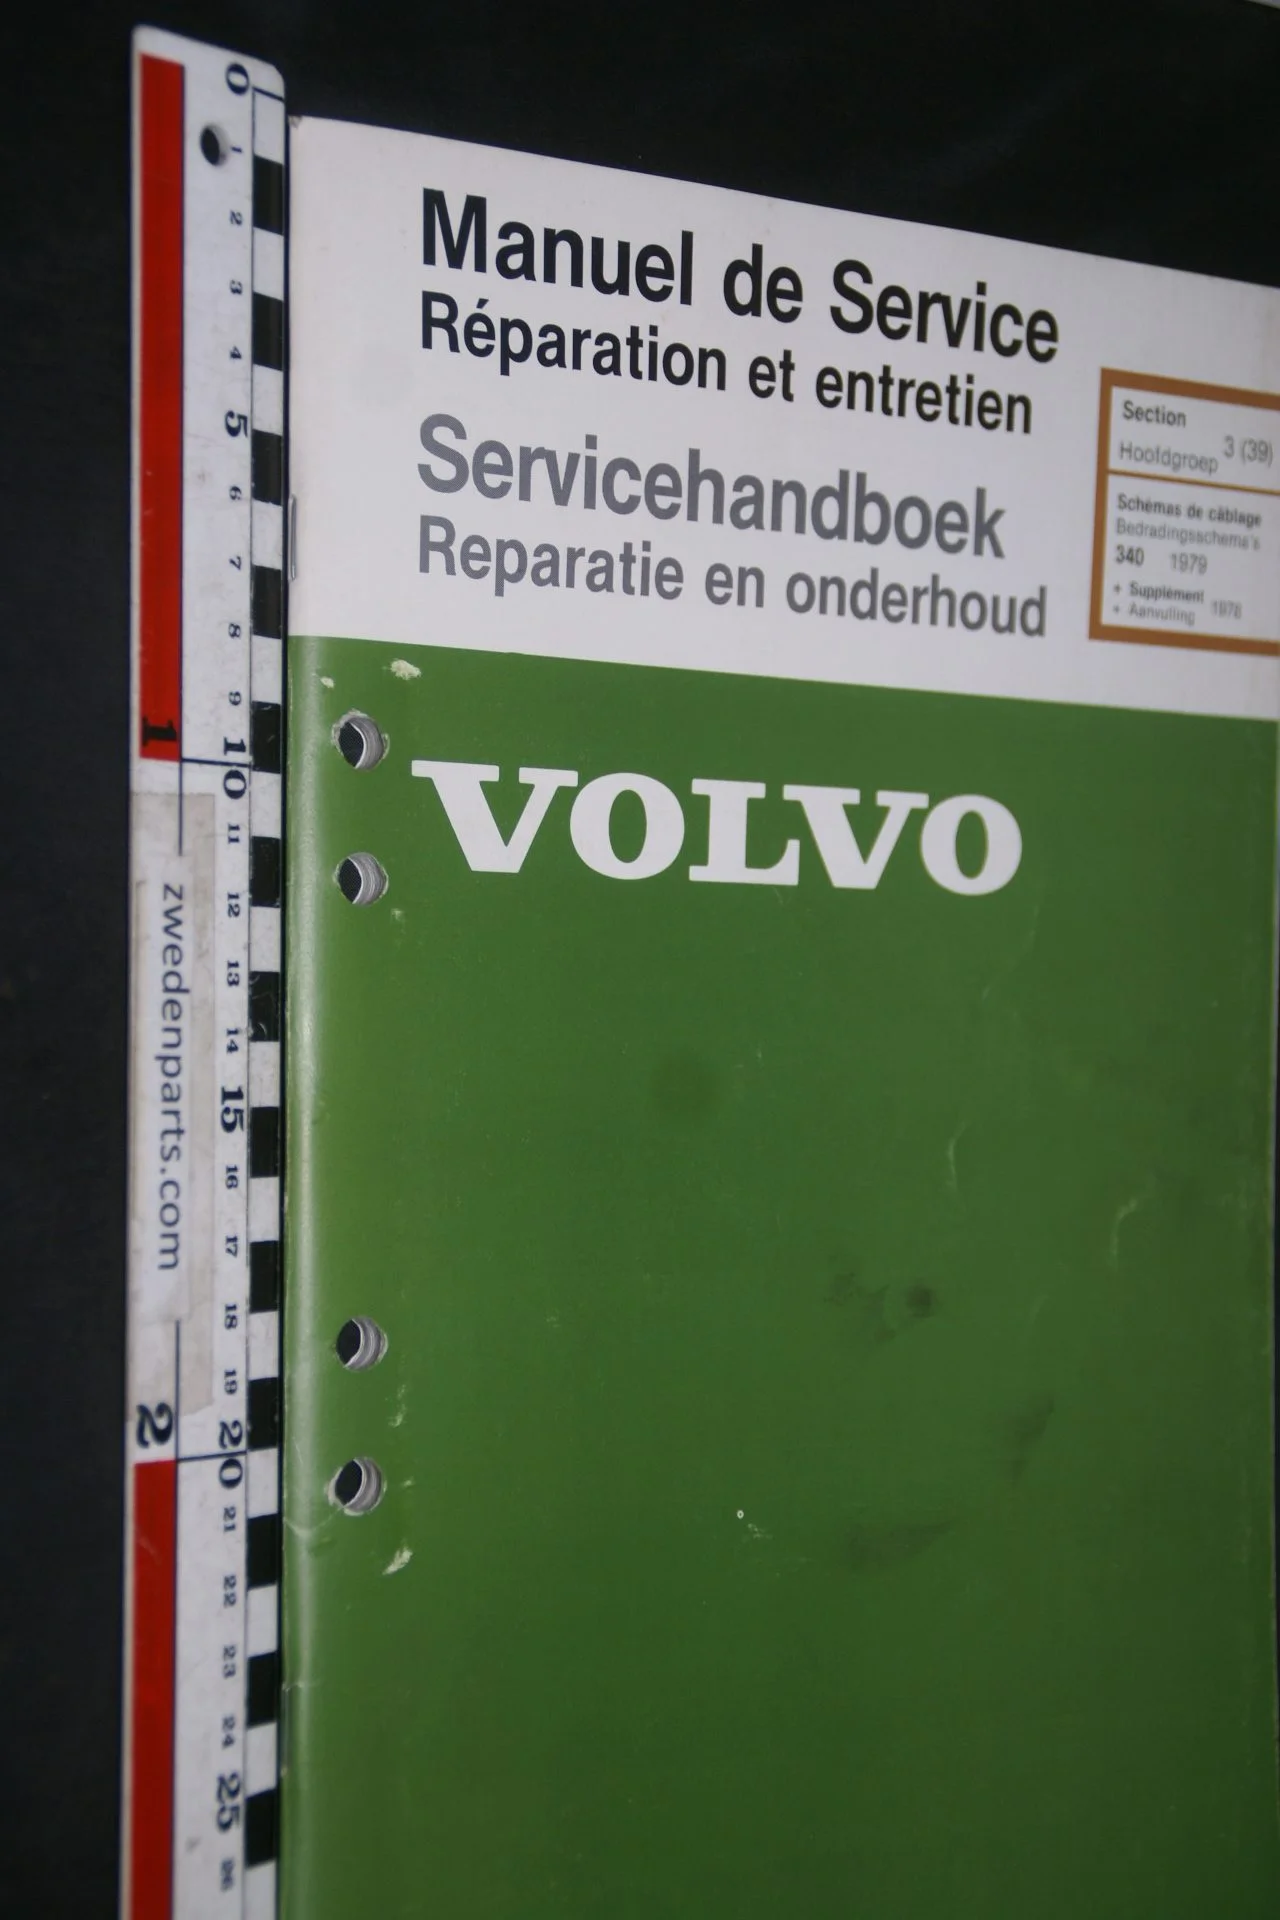 DSC06854 1979 origineel Volvo 340 servicehandboek 3(39) bedradingsschema 1 van 2000 TP 35001-1 Francais, Hollands